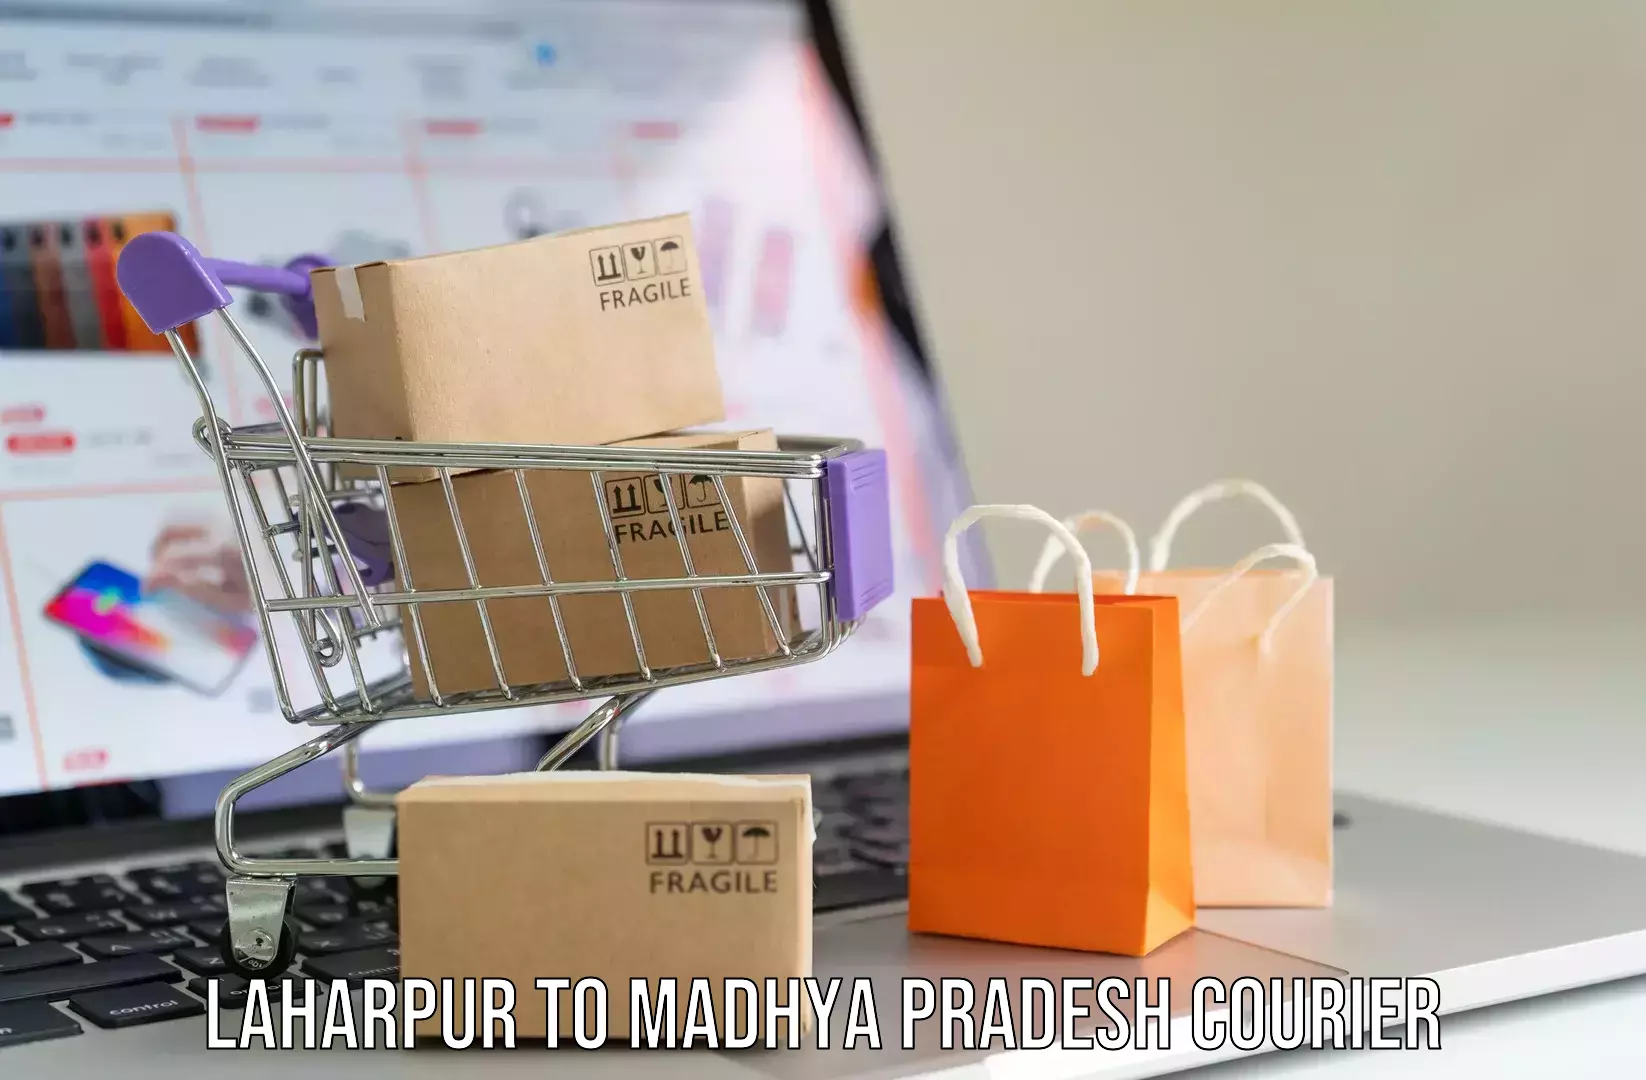 Baggage courier service Laharpur to Jhunku